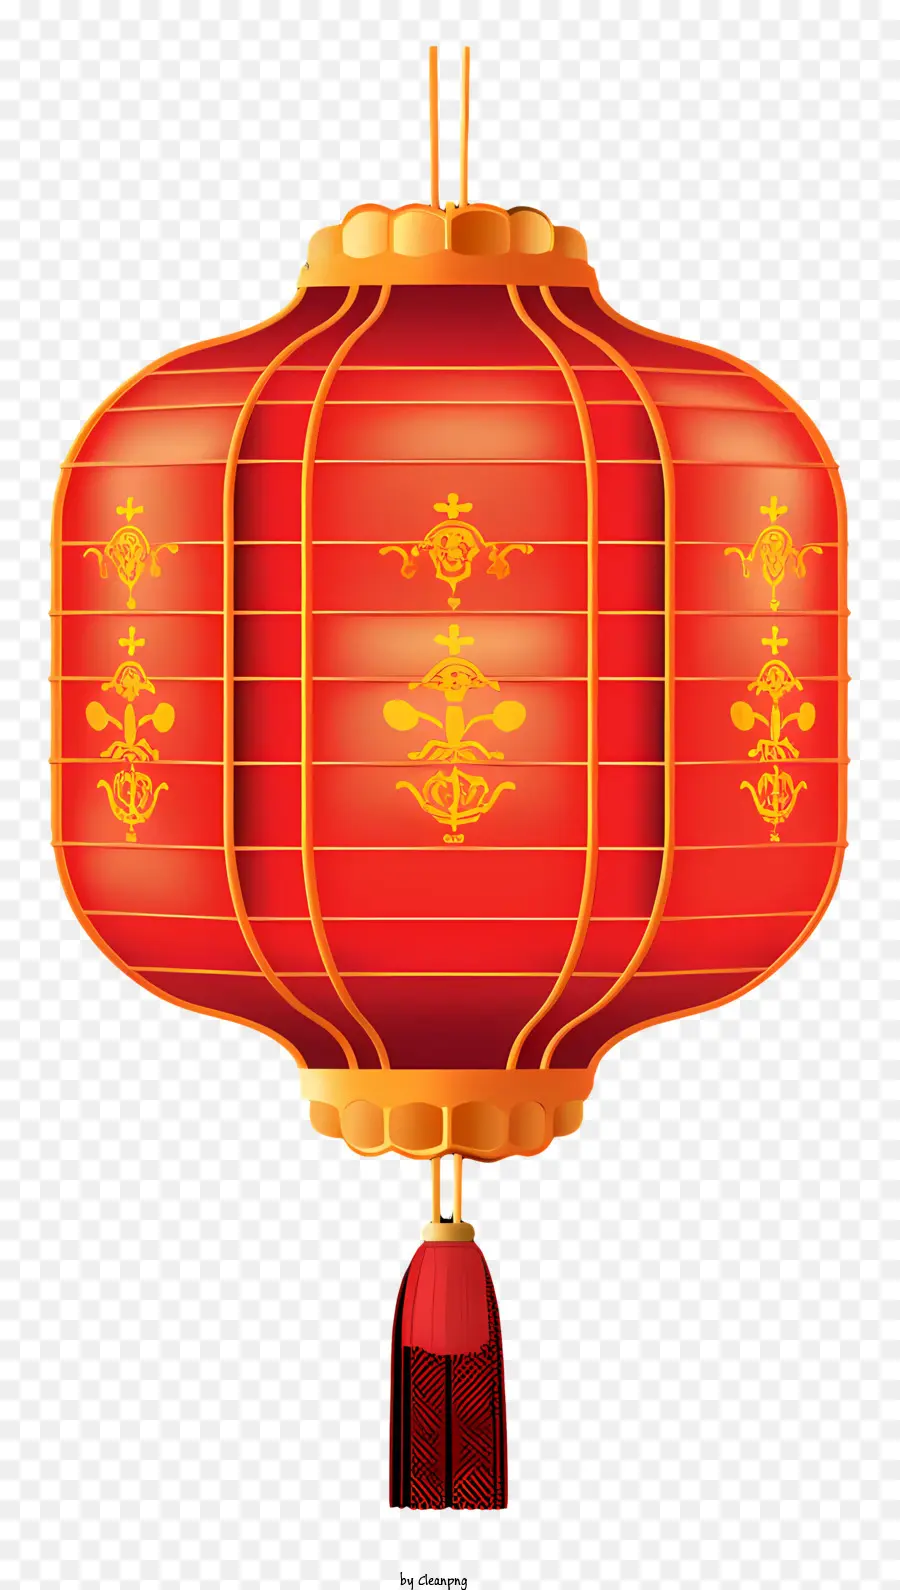 lanterna cinese - Lanterna cinese con accenti rossi e dorati